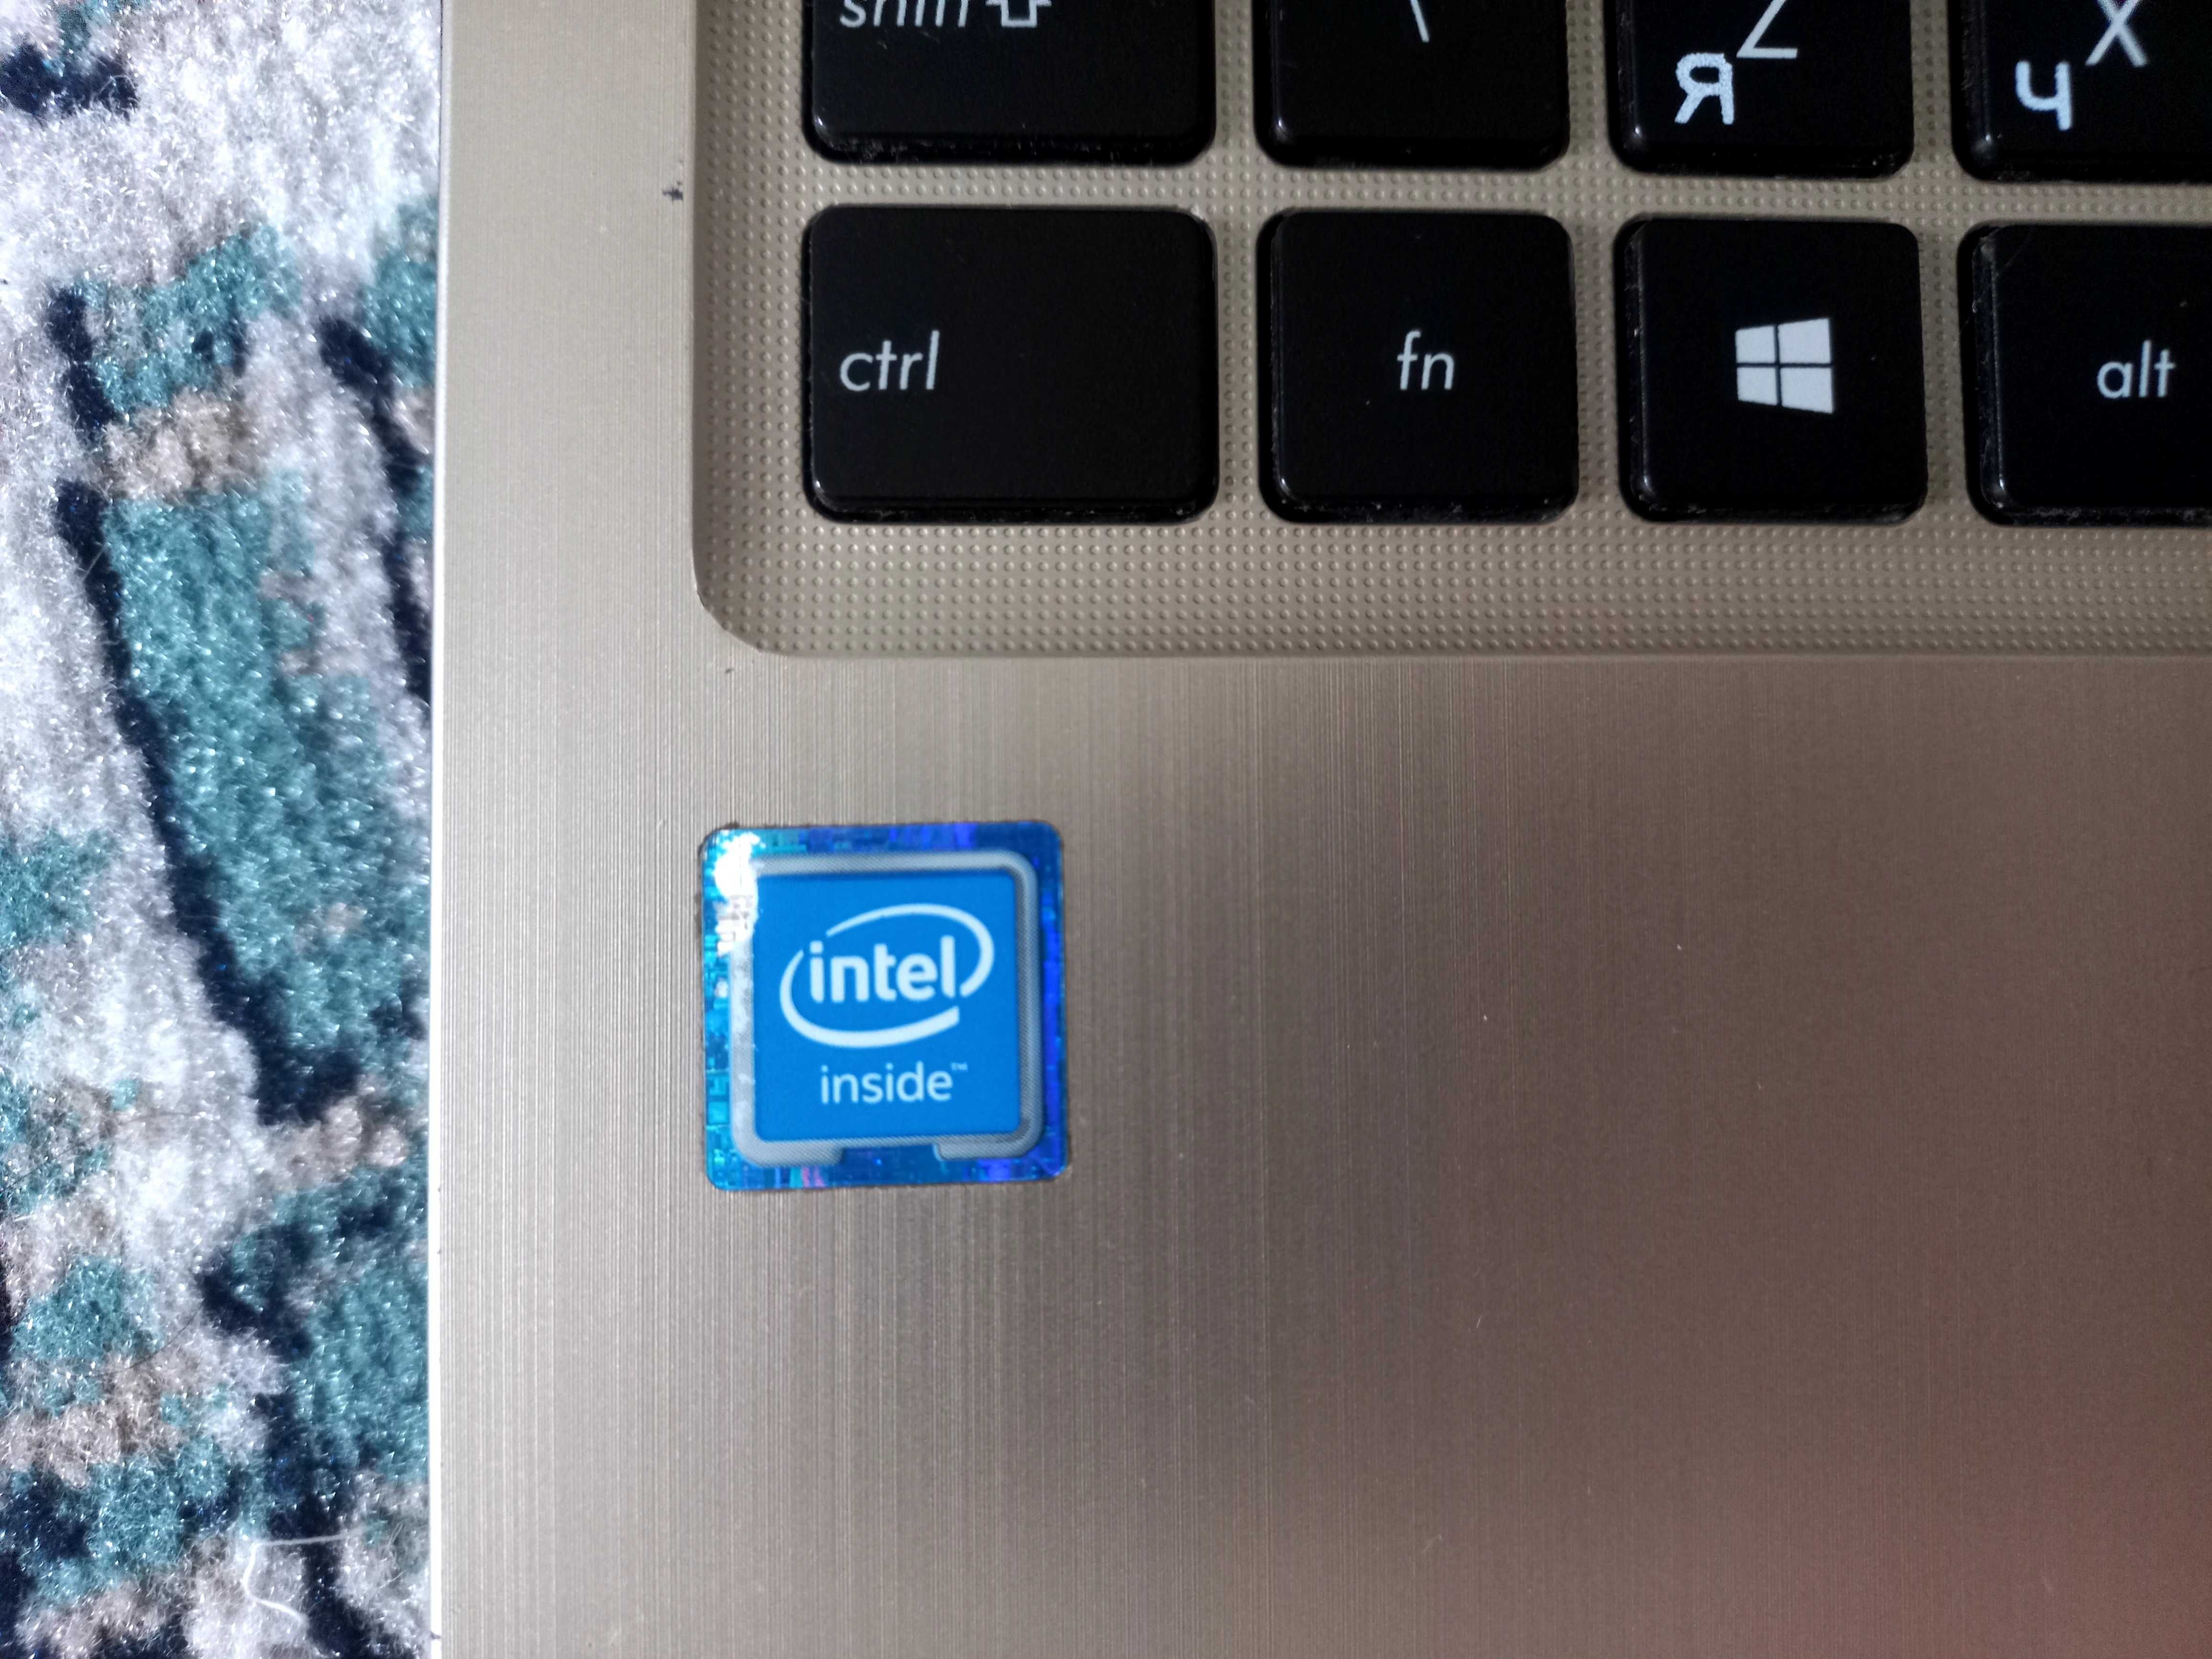 Noutbuk Intel(R) Celeron(R) CPU N3050